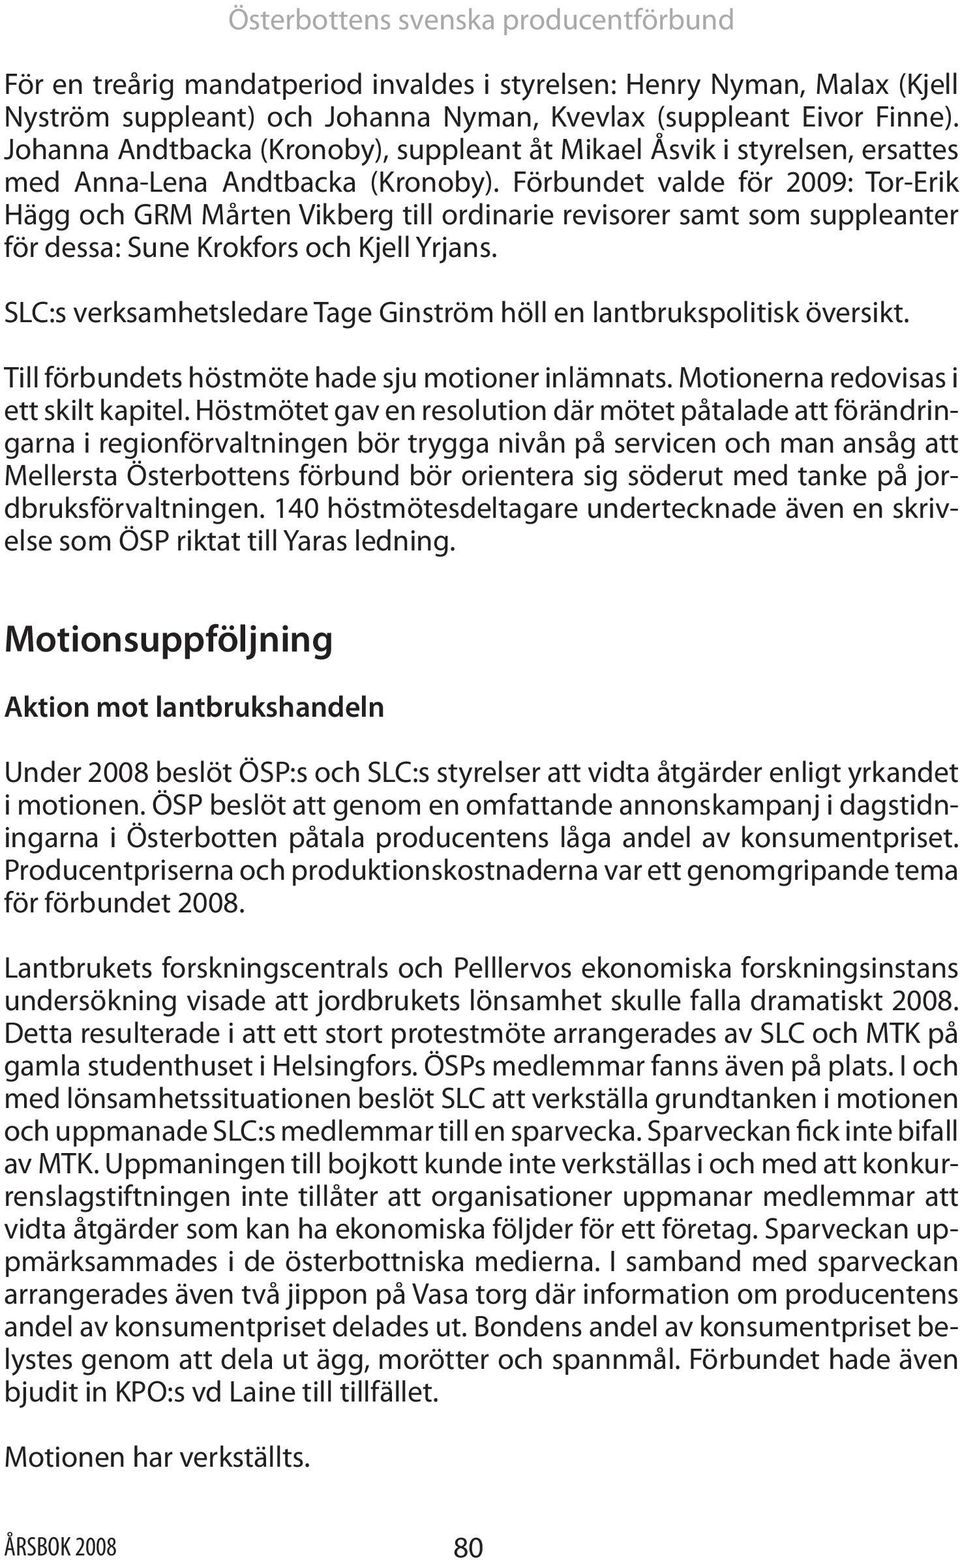 Förbundet valde för 2009: Tor-Erik Hägg och GRM Mårten Vikberg till ordinarie revisorer samt som suppleanter för dessa: Sune Krokfors och Kjell Yrjans.